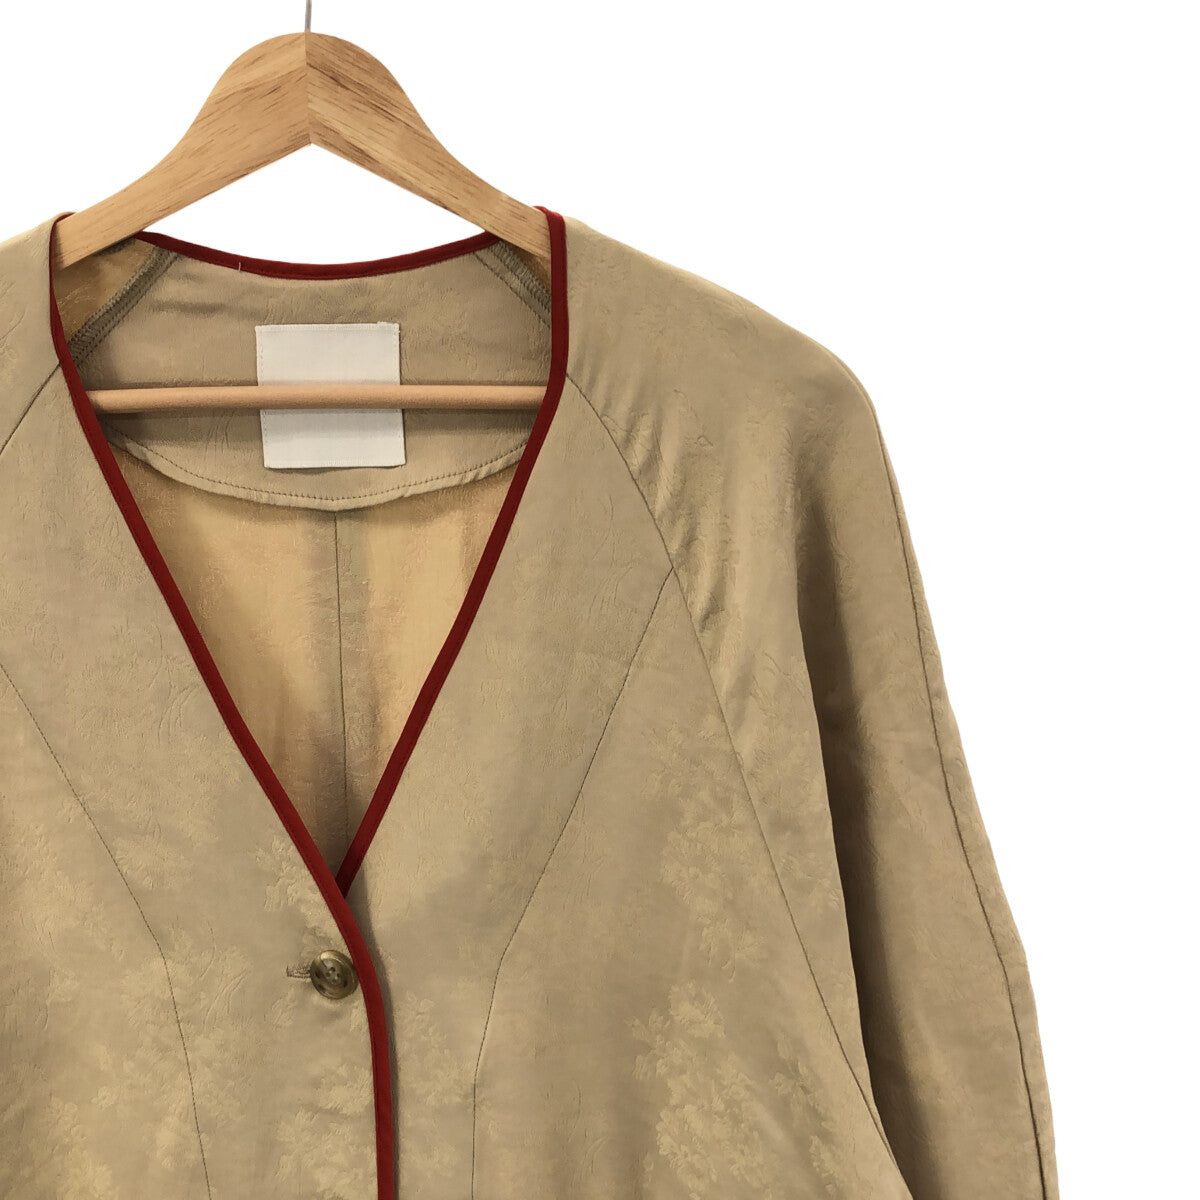 CLANE / クラネ | 2021SS | BOTANICALS JACQUARD DRESS COAT ボタニカル ジャガード ドレス コート |  1 | ベージュ | レディース